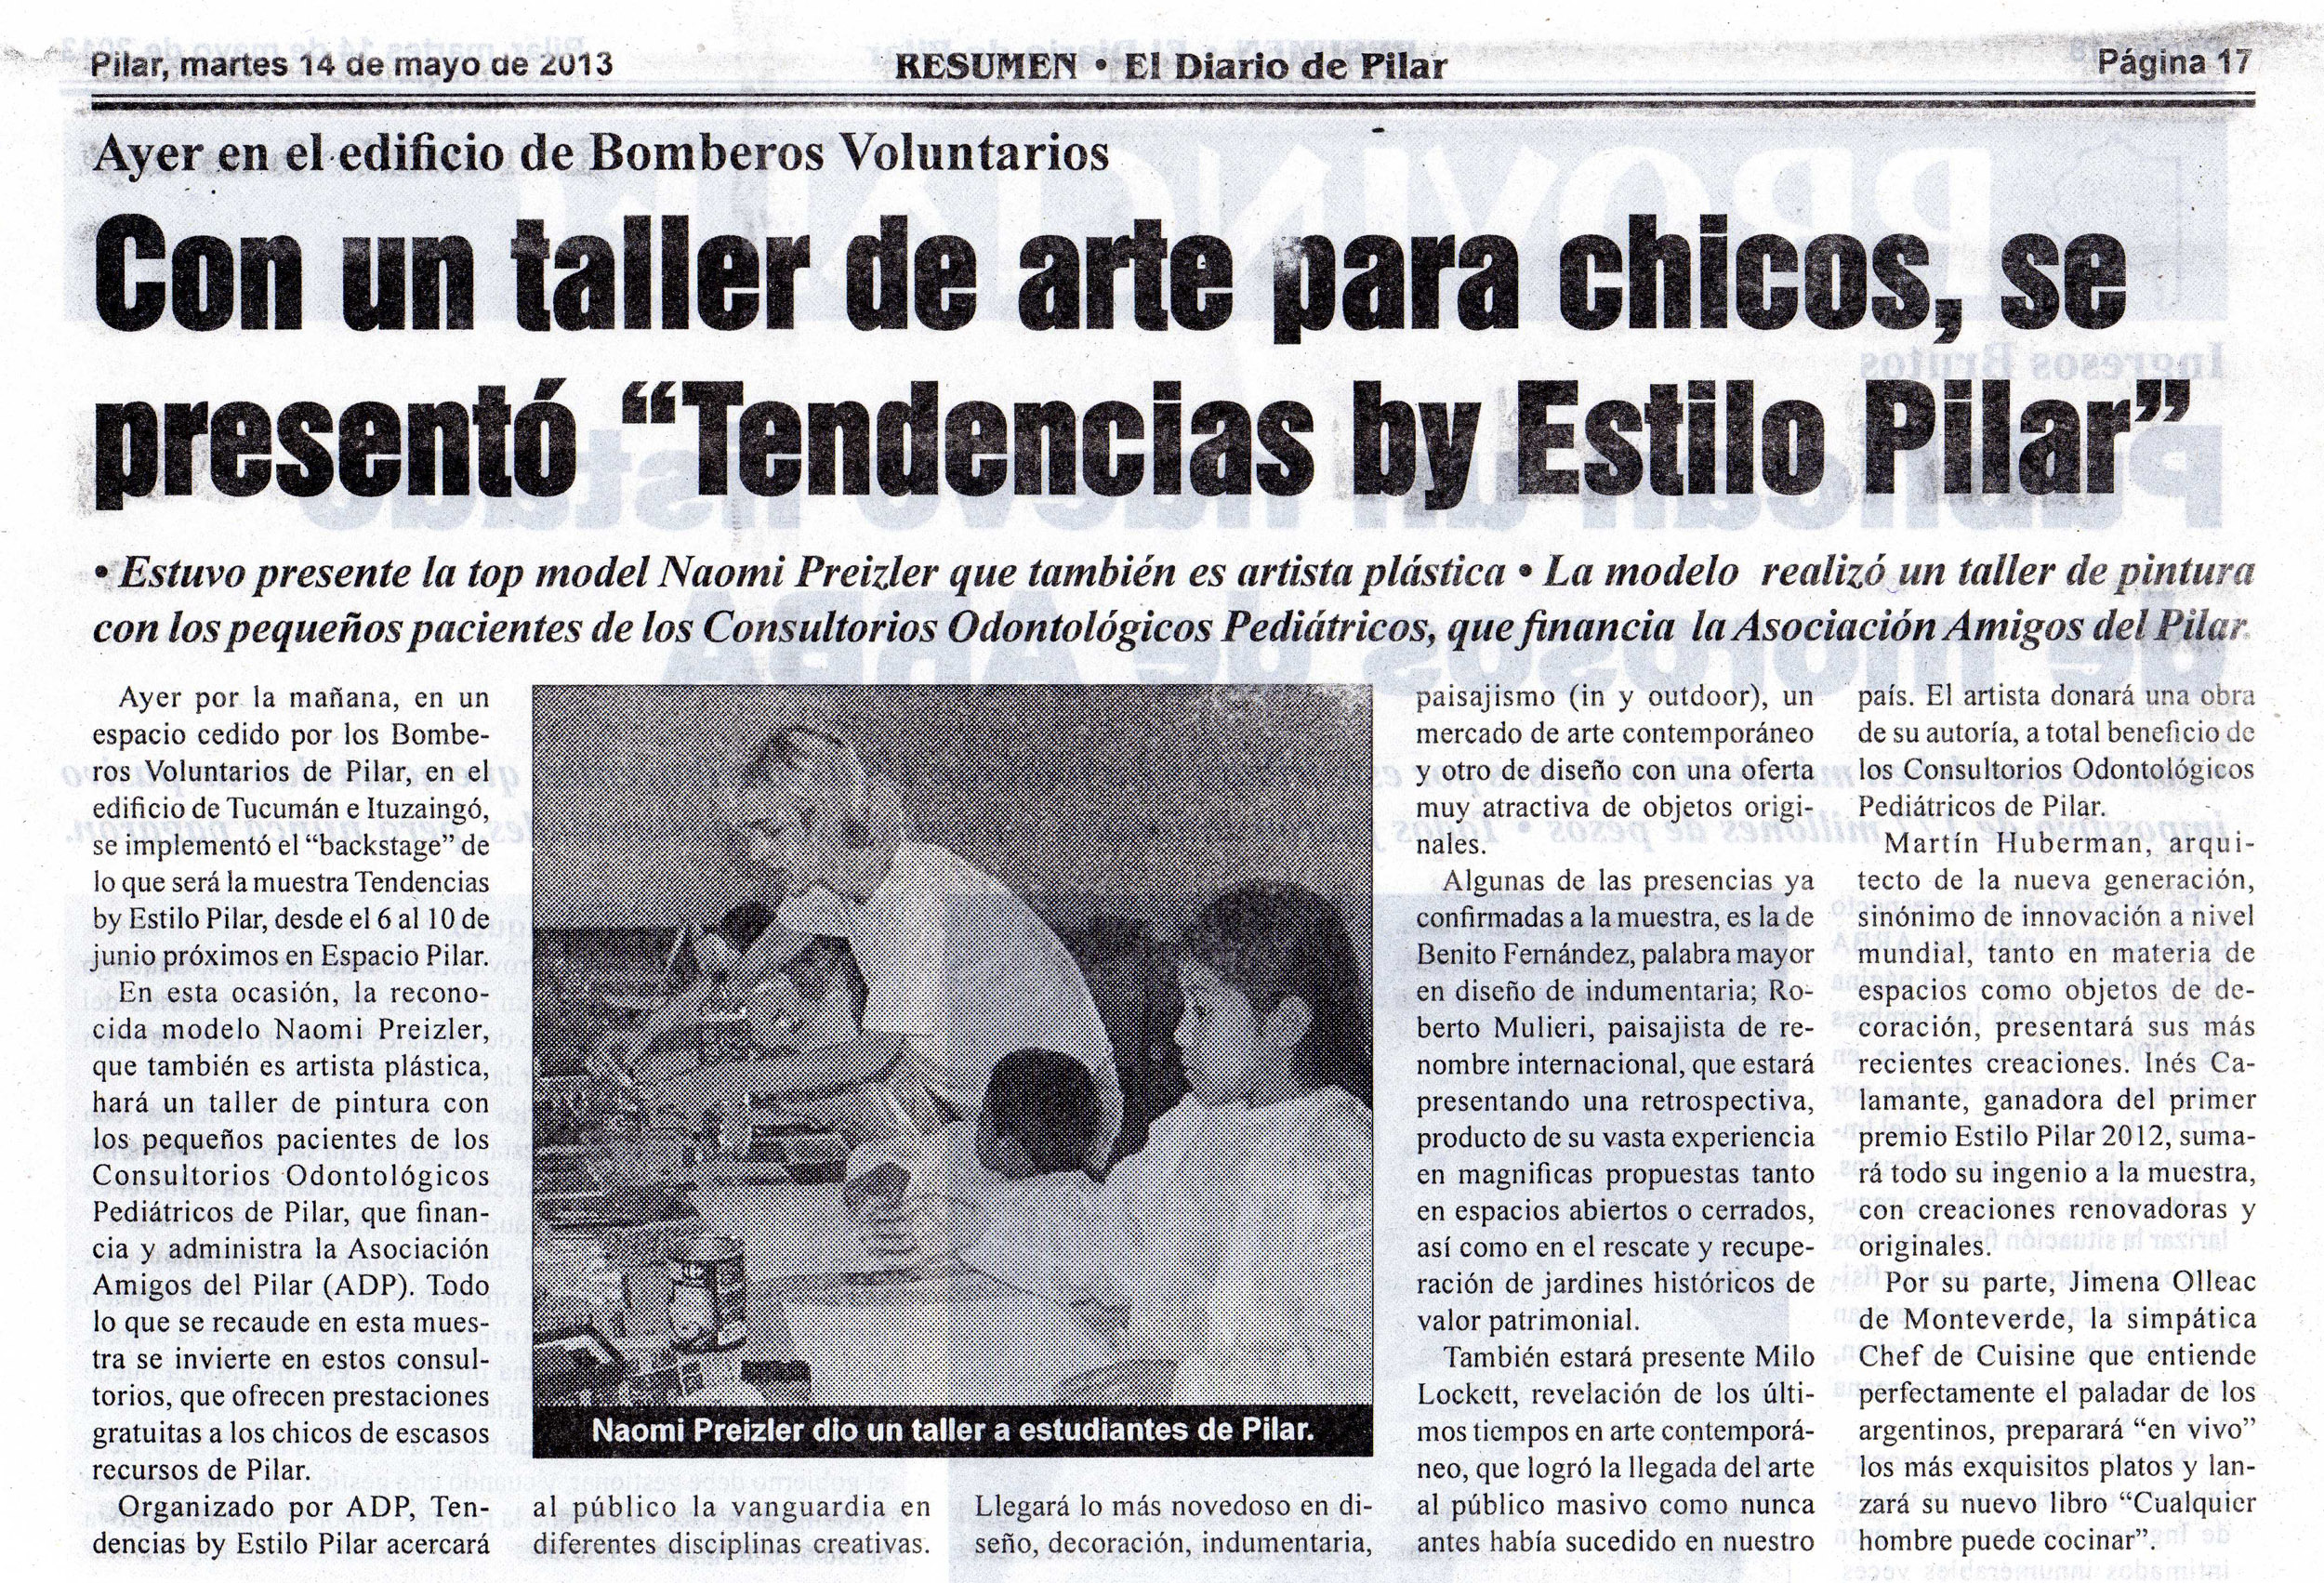 Diario Resumen, 14 de mayo de 2013